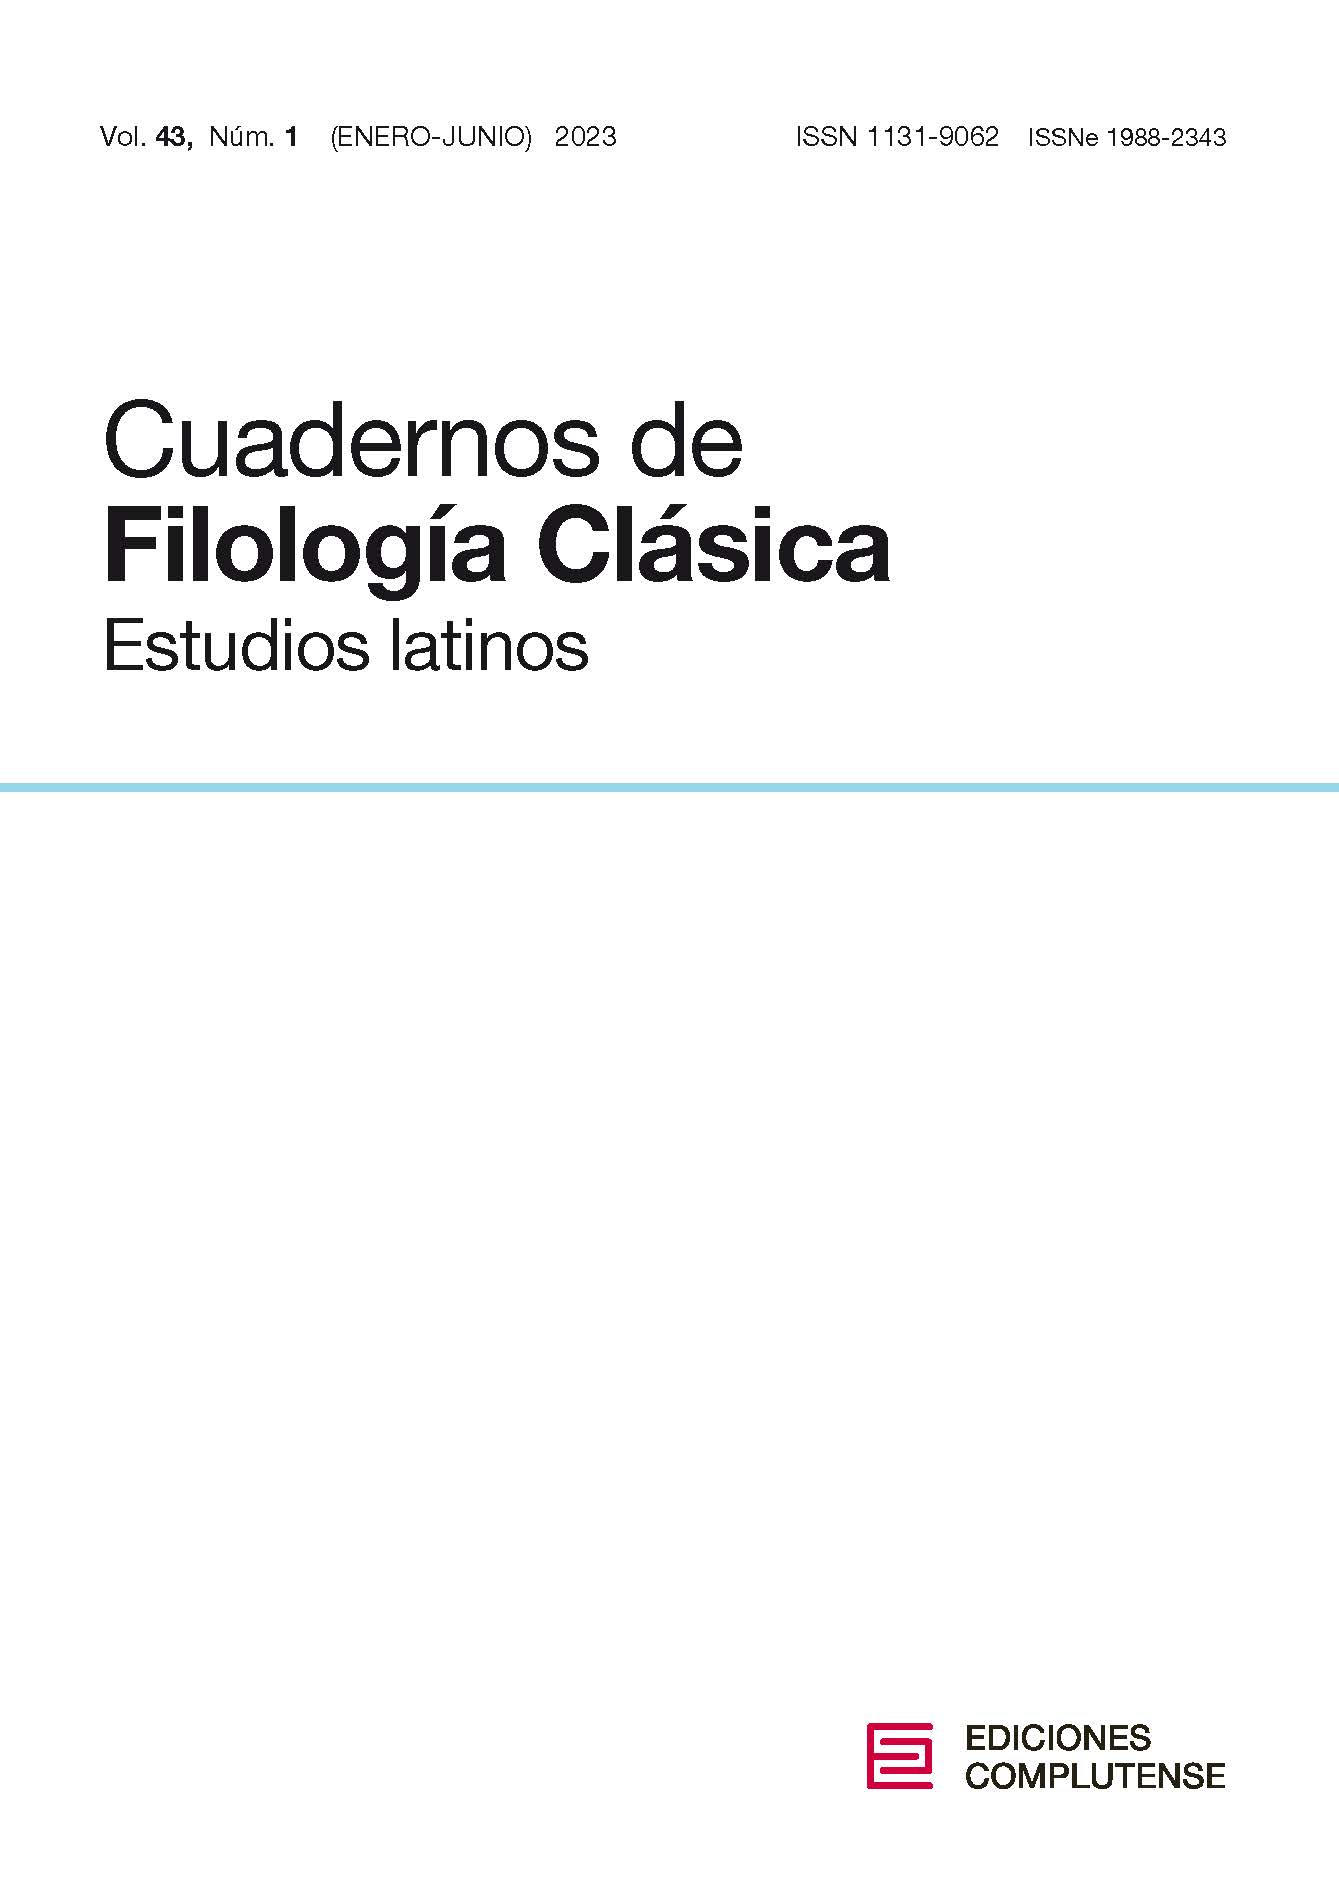 Cubierta Cuadernos de Filología Clásica, estudios latinos 43 (1) 2023